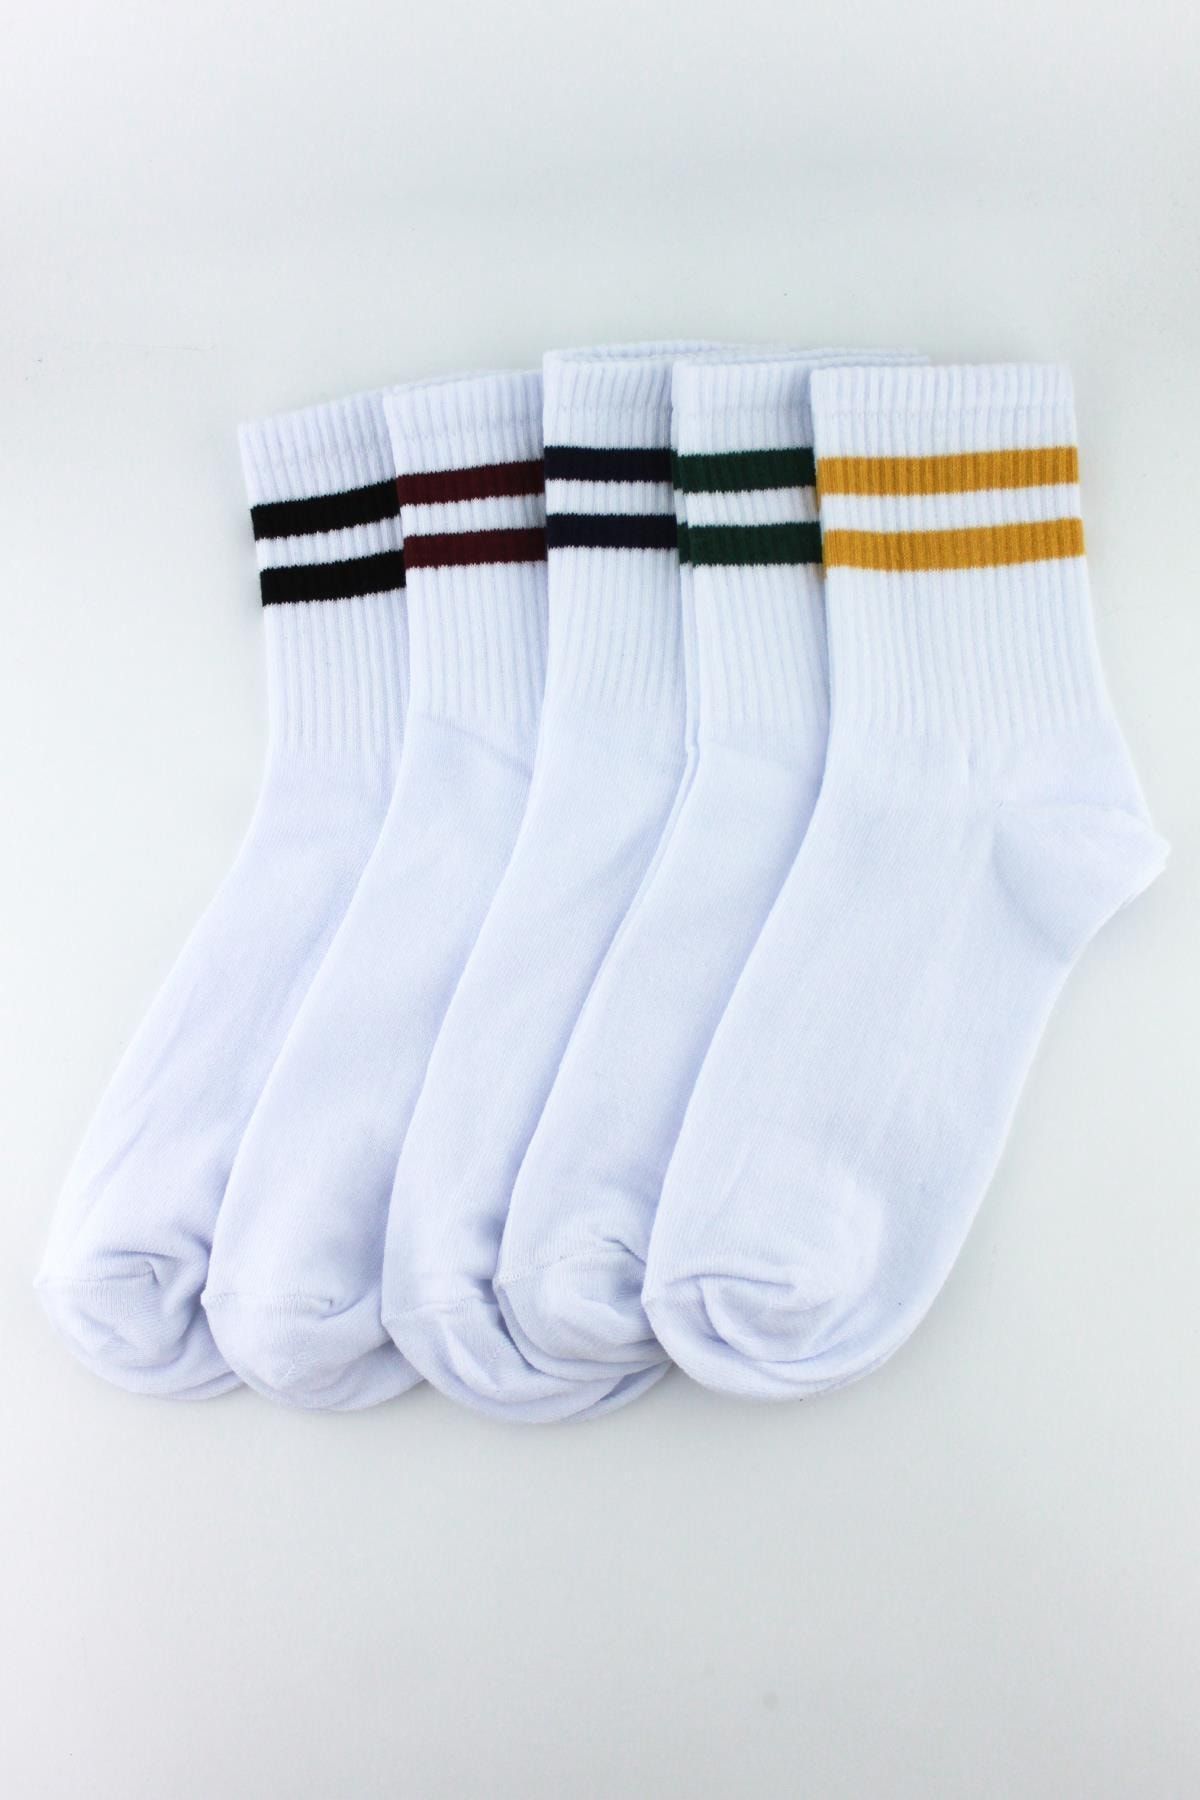 Trick or Treat Beyaz, 5'li Paket Farklı Çizgilerde Beyaz Yarım Konç Erkek Kadın Unisex Çorap